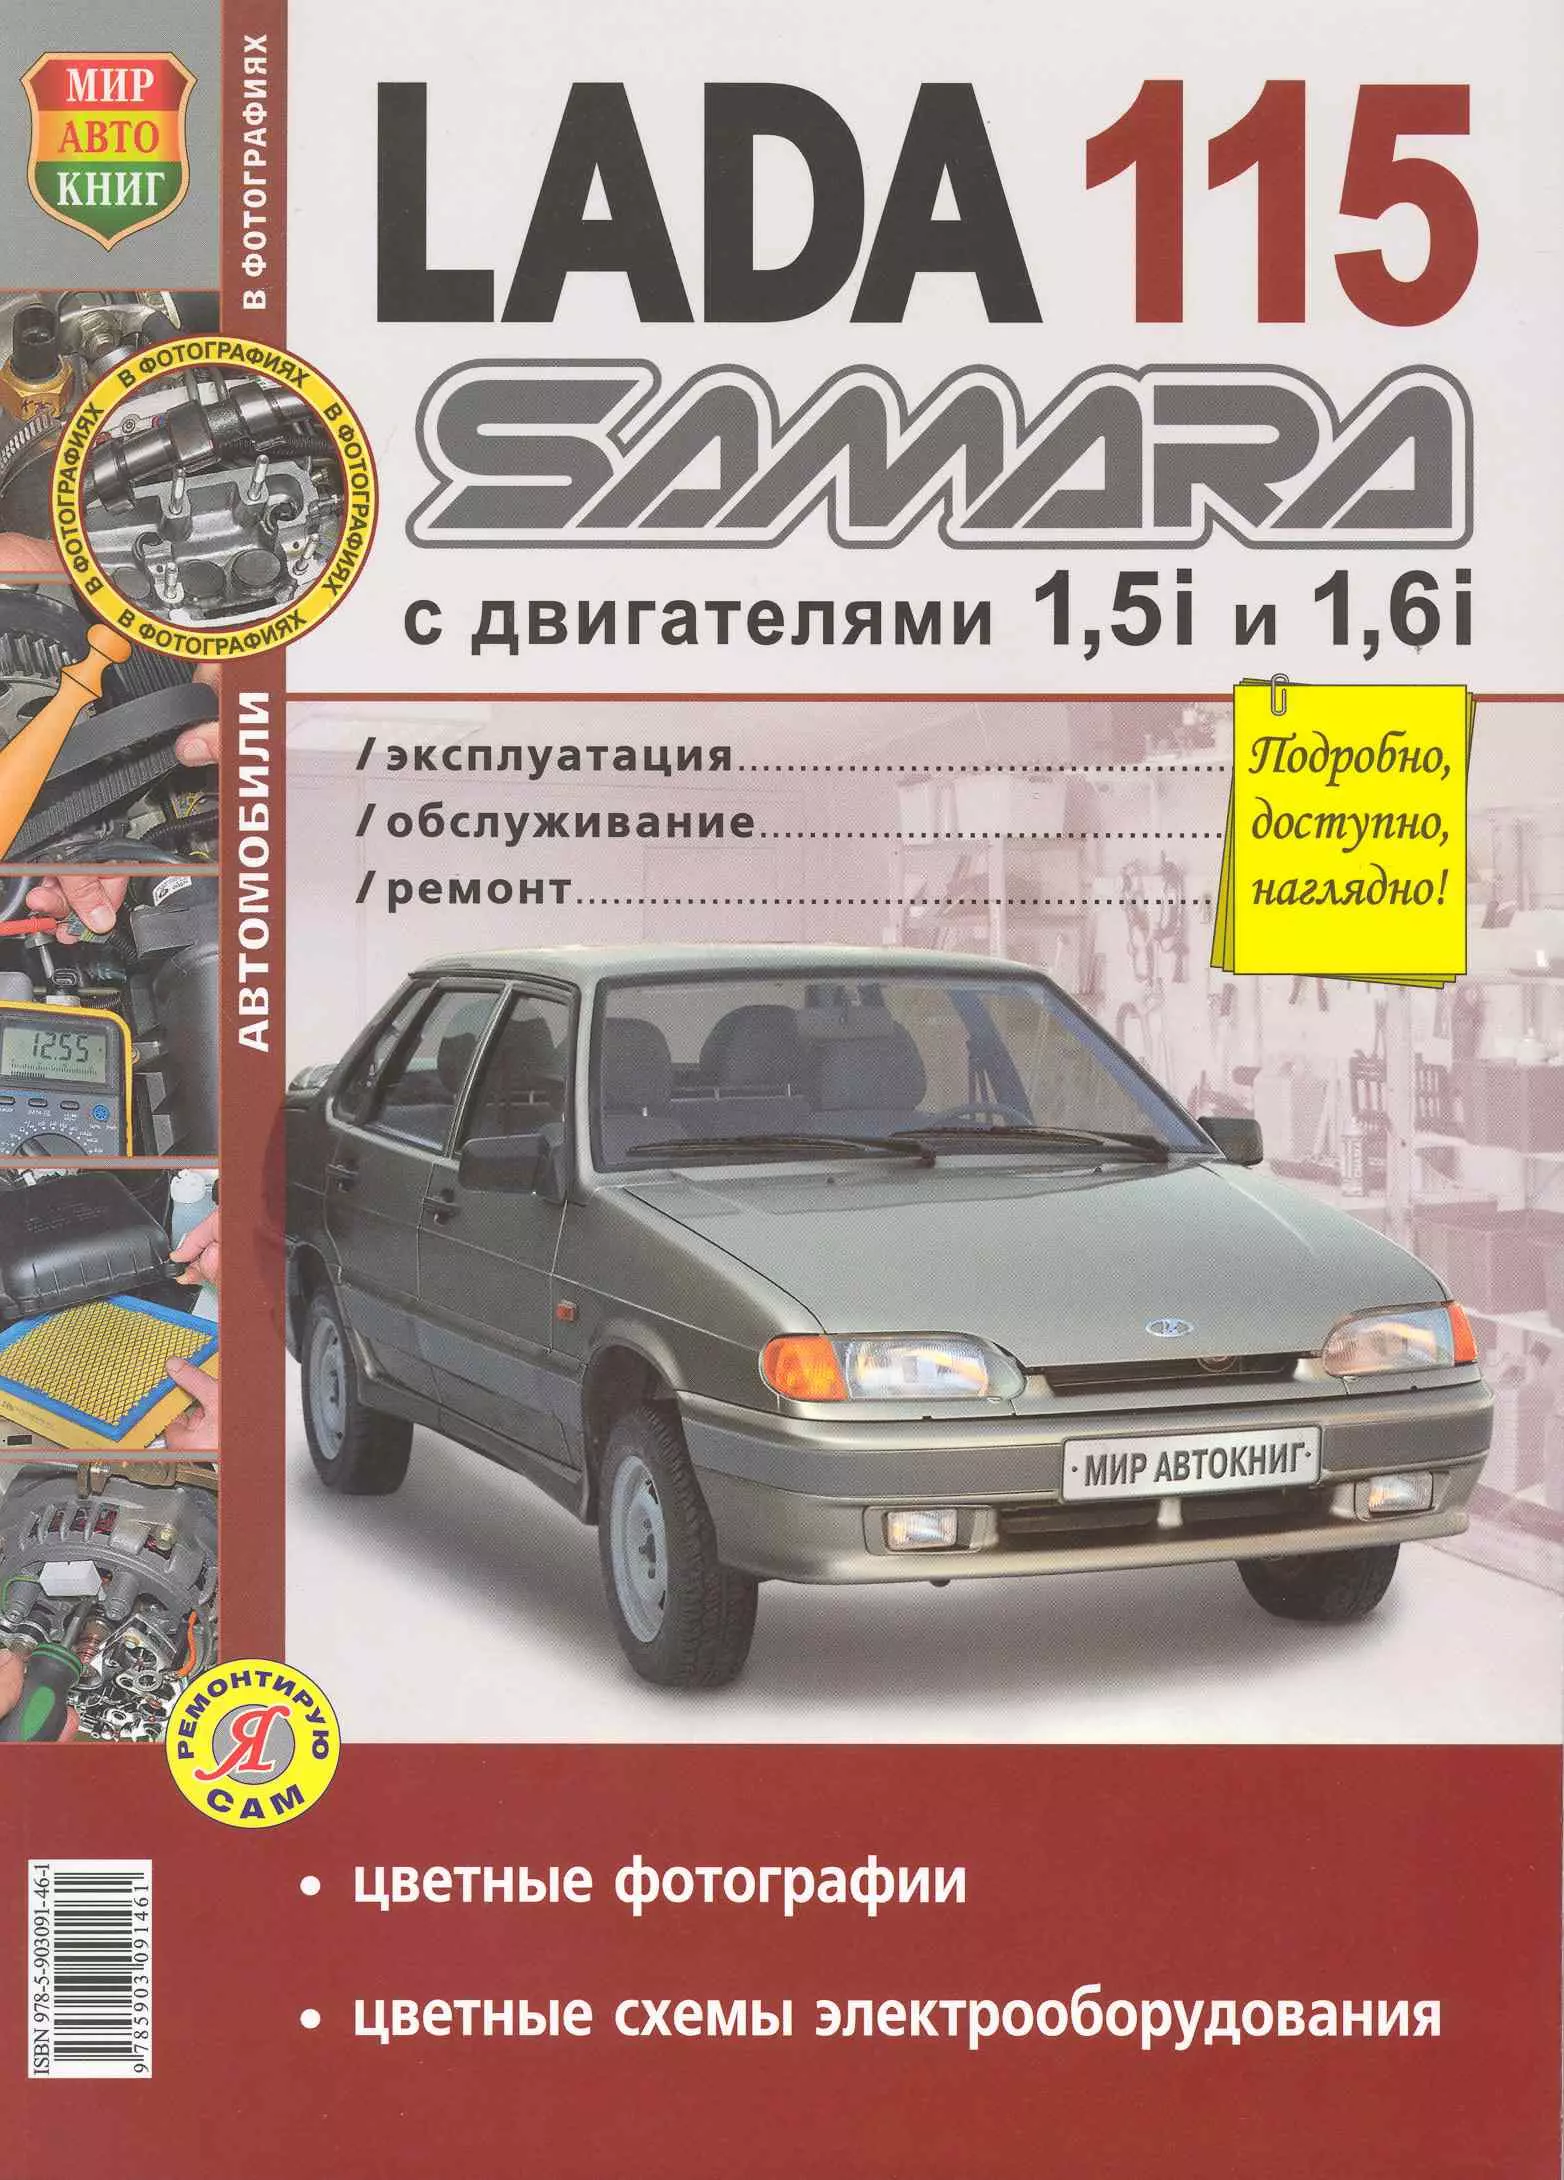  - ВАЗ Lada Samara 115 в цв фото